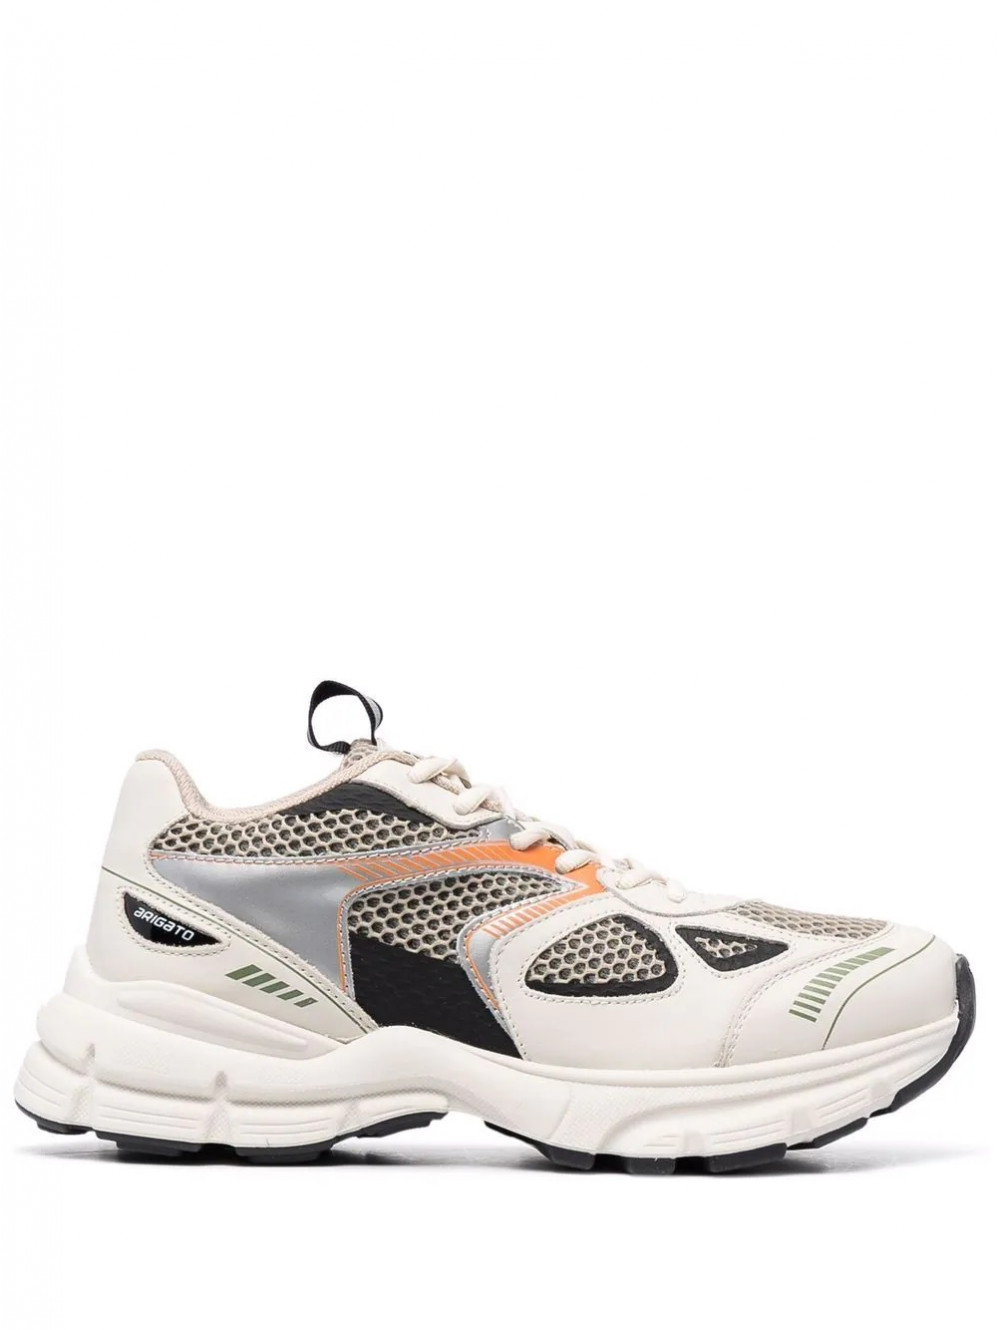 Marathon runner shoe